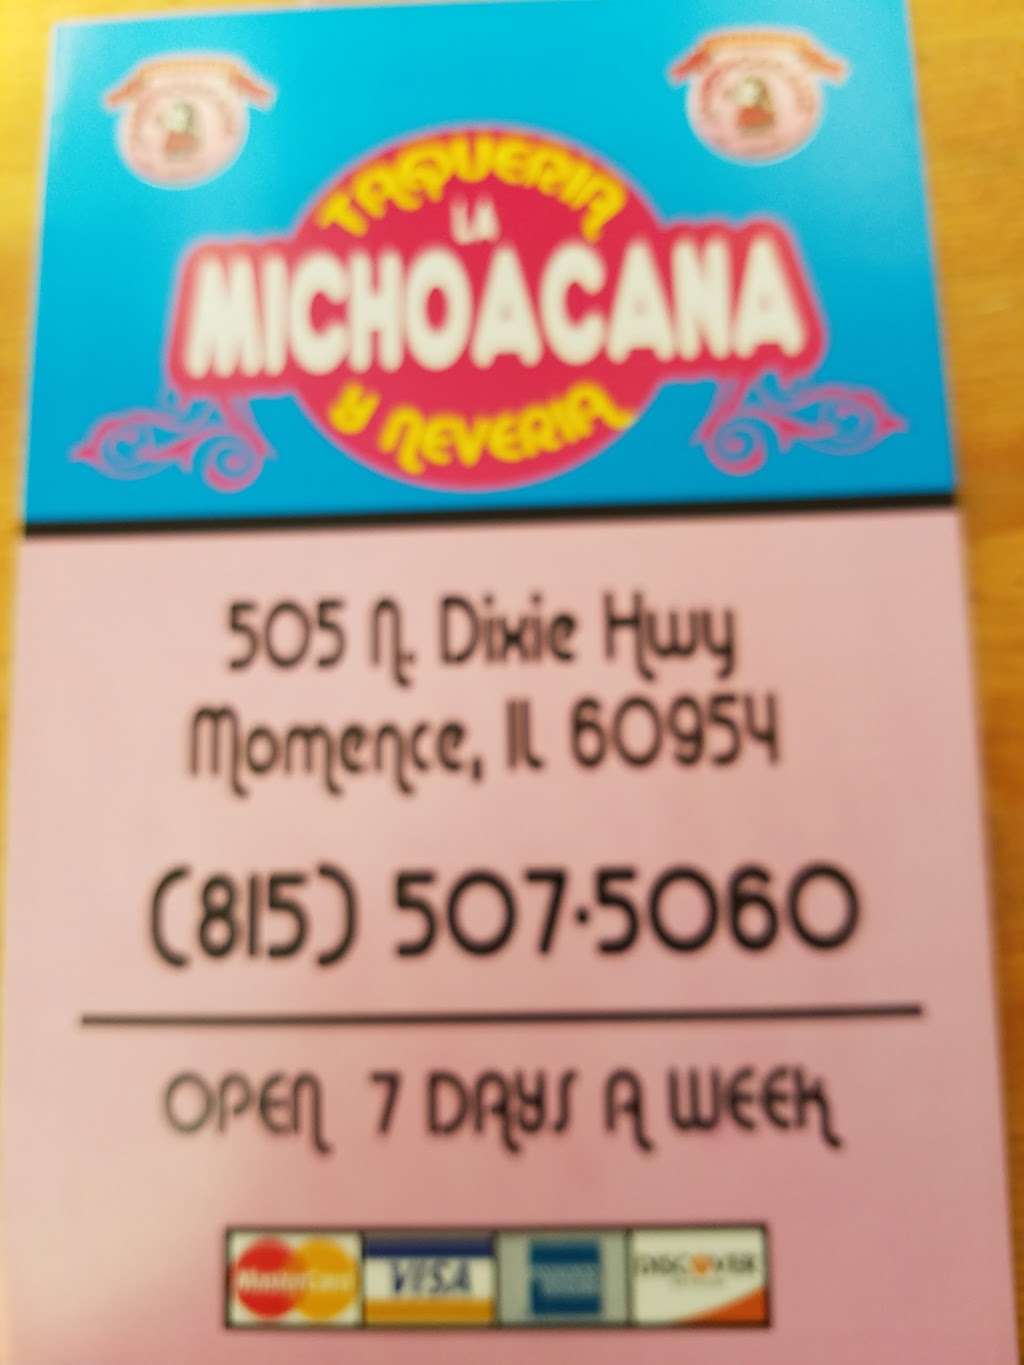 Michoacana | 505 N Dixie Hwy, Momence, IL 60954, USA | Phone: (815) 507-5060